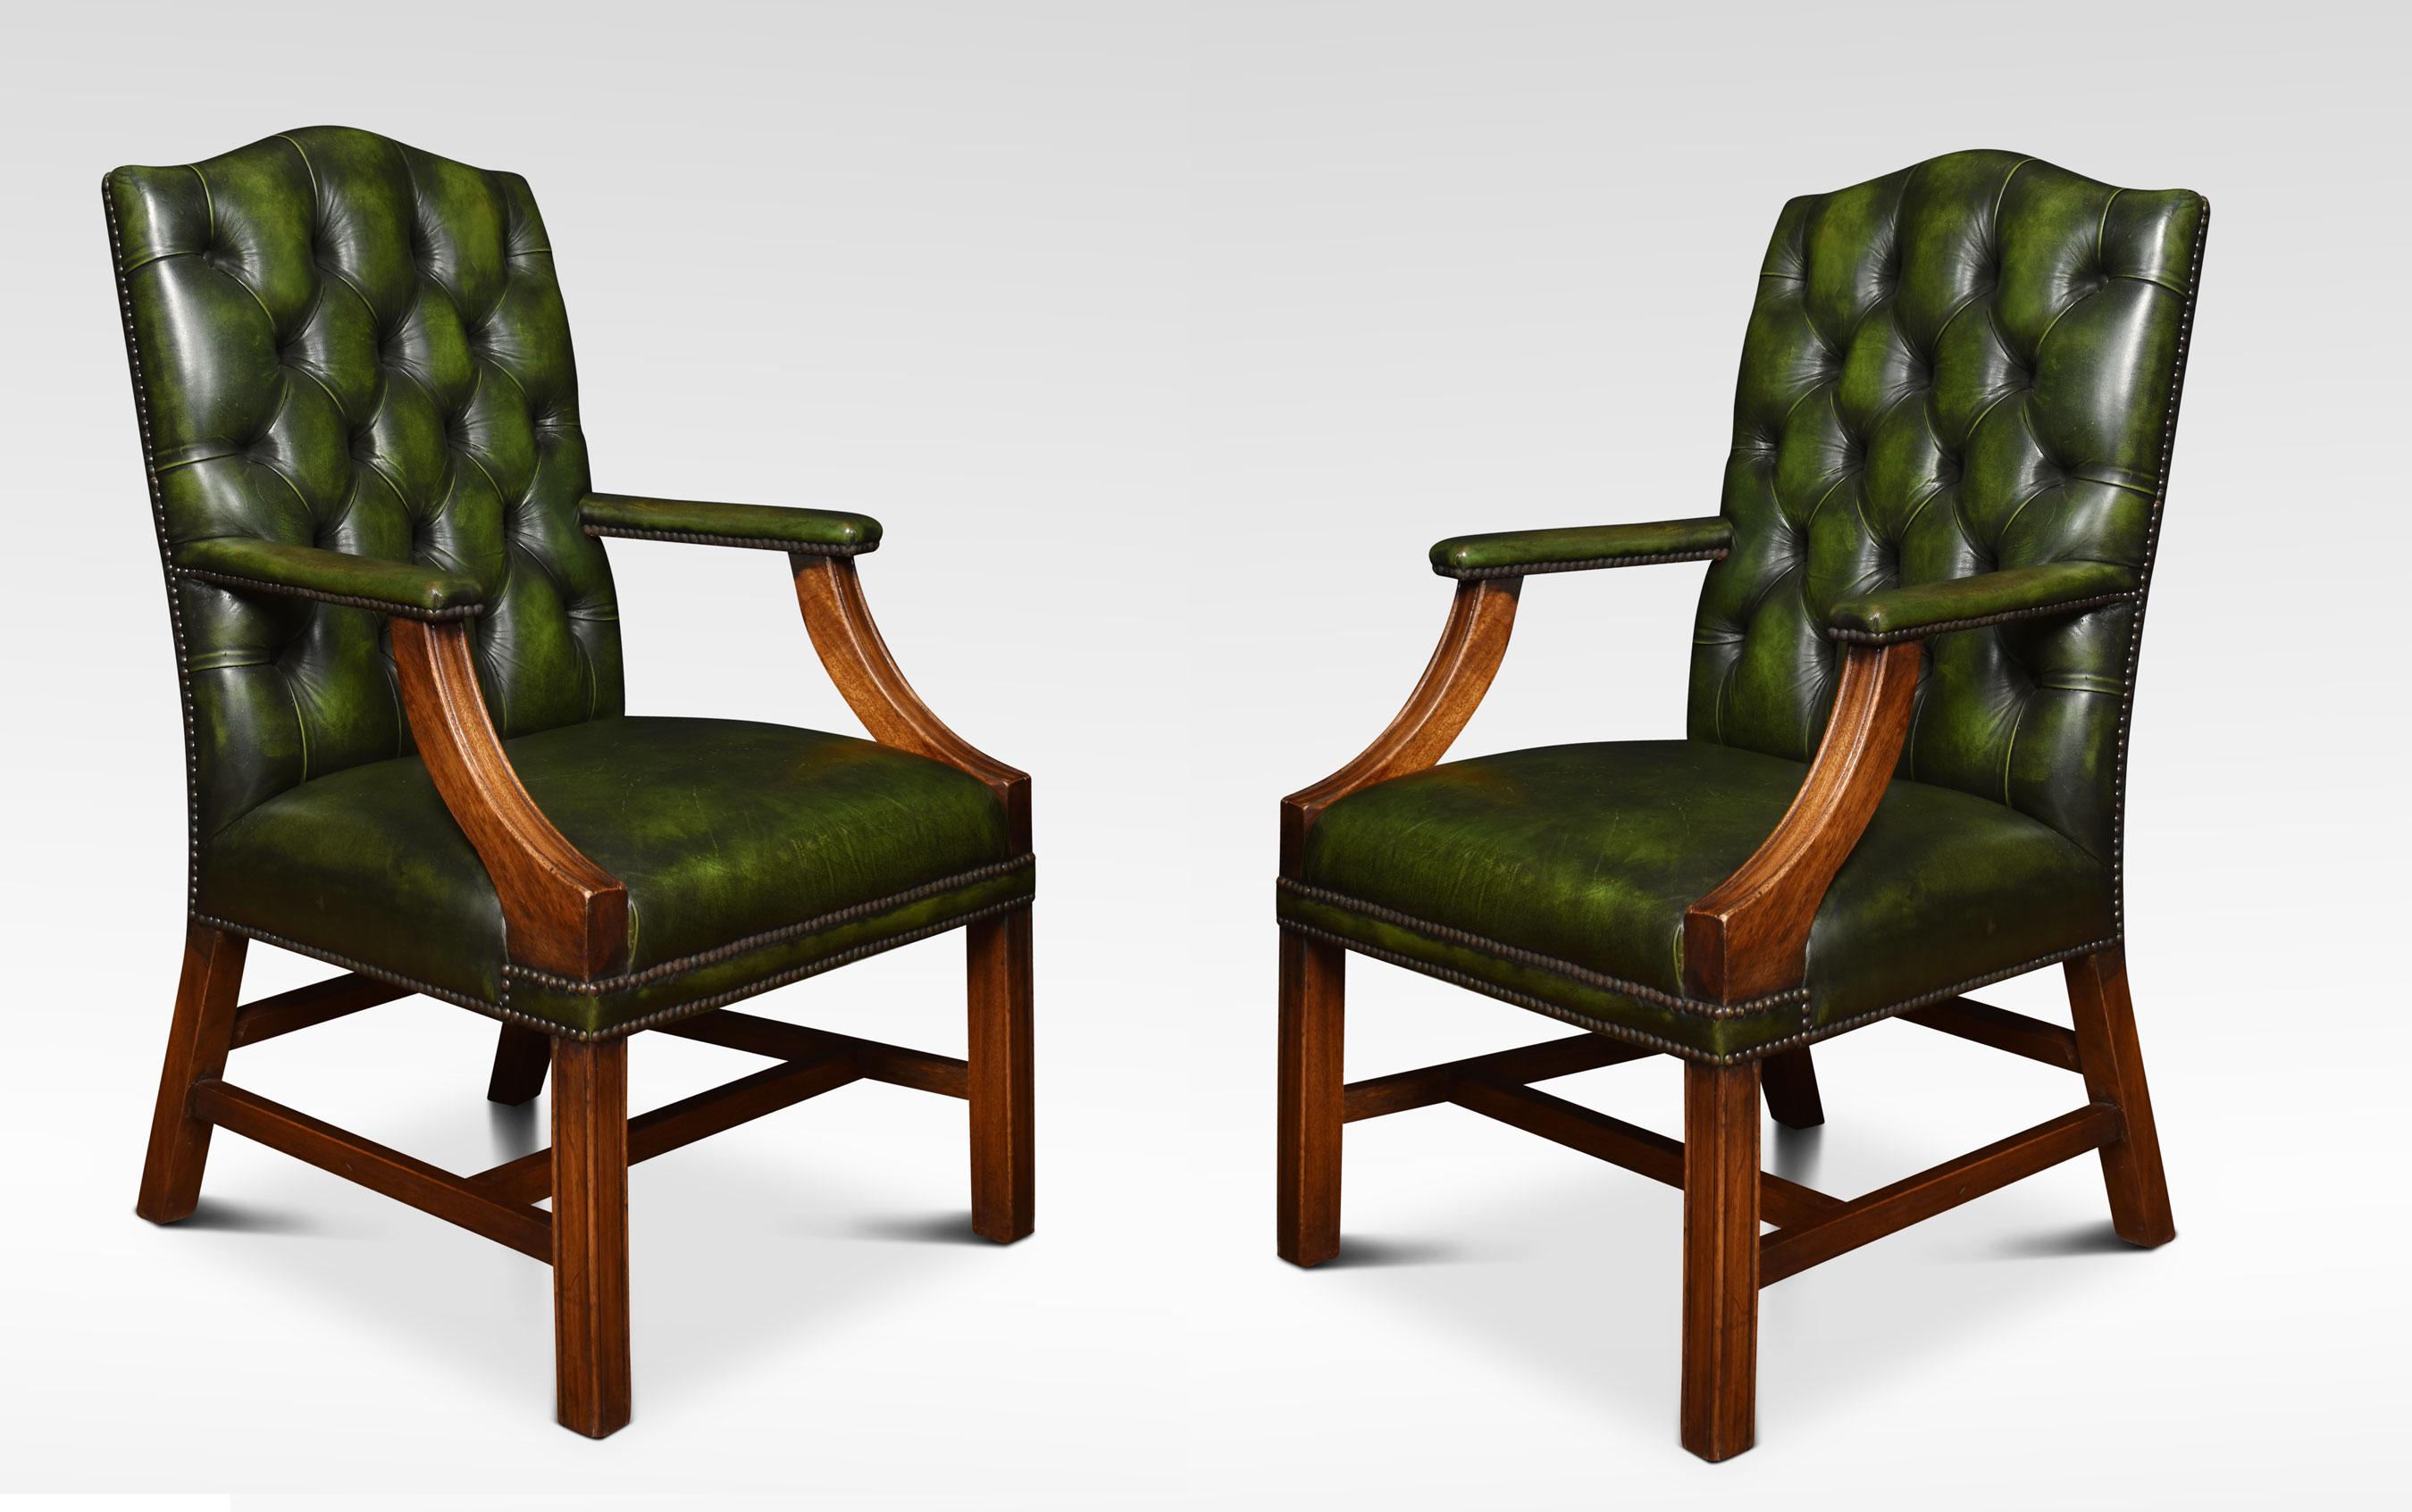 Paire de chaises de bibliothèque Gainsborough en cuir de style géorgien, avec dossier et assise en cuir vert profondément boutonné et bords cloutés en laiton. Le cadre en acajou massif repose sur des pieds carrés, unis par un